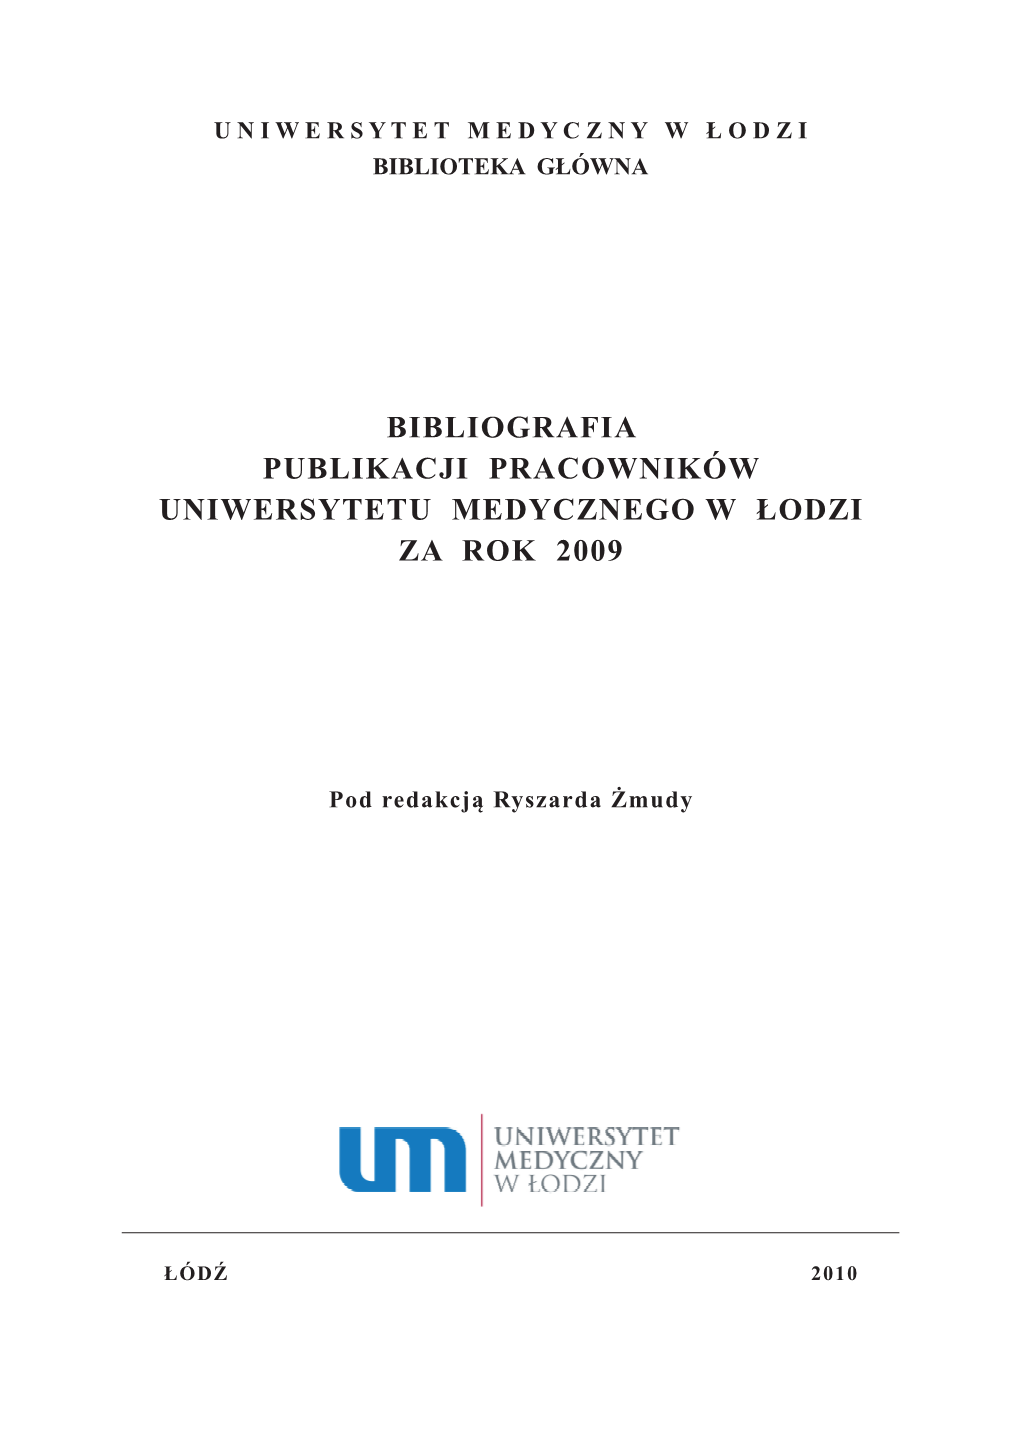 Bibliografia Publikacji Pracowników Uniwersytetu Medycznego W Łodzi Za Rok 2009